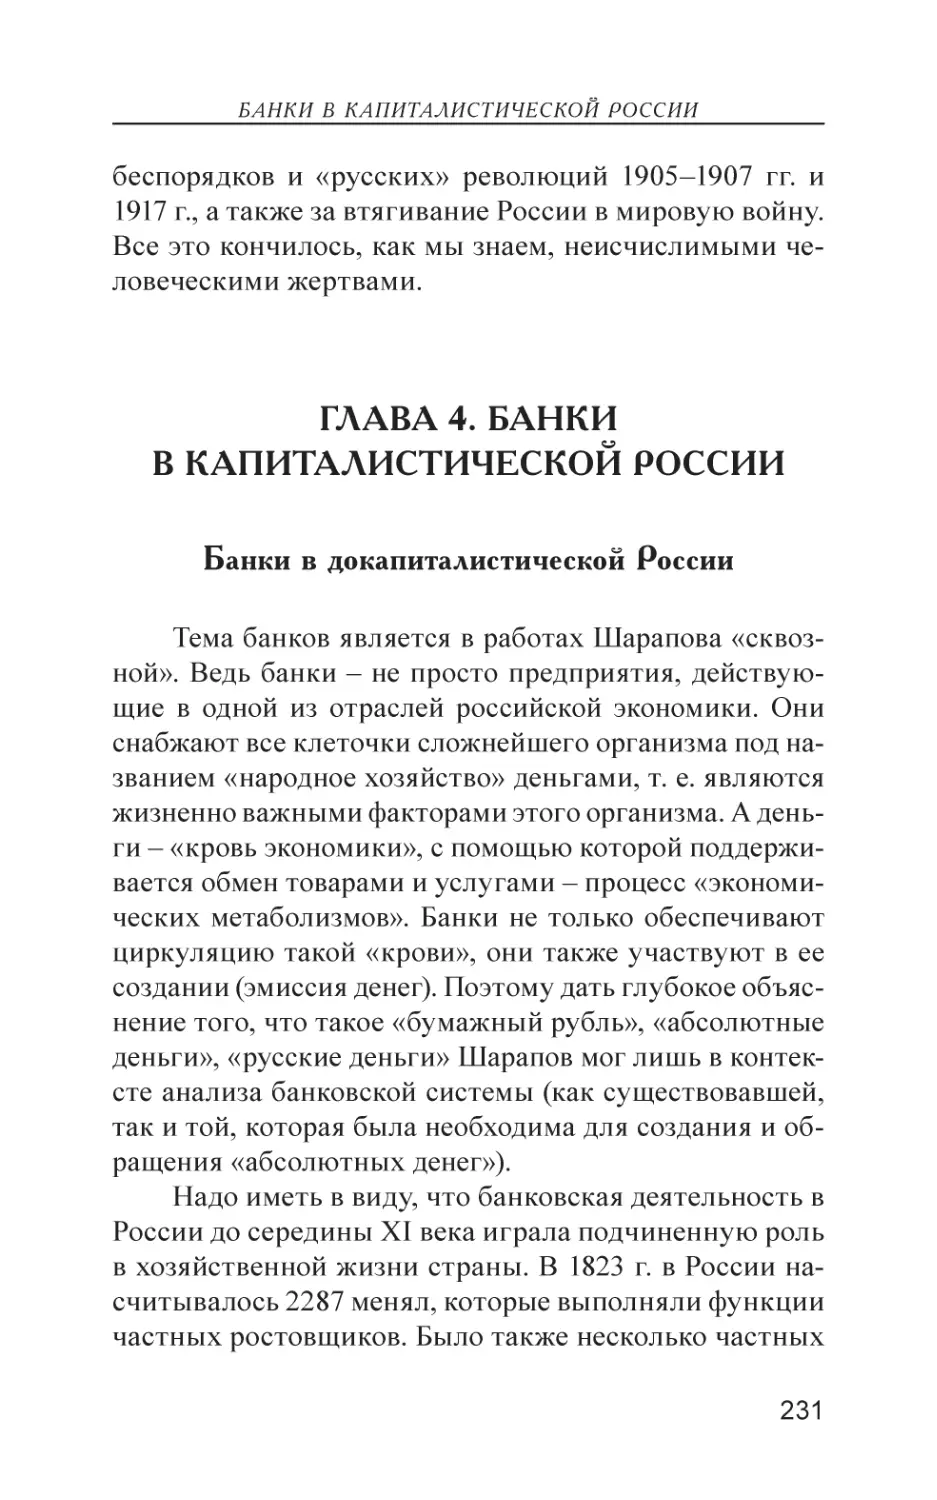 Глава 4. Банки в капиталистической России
Банки в докапиталистической России